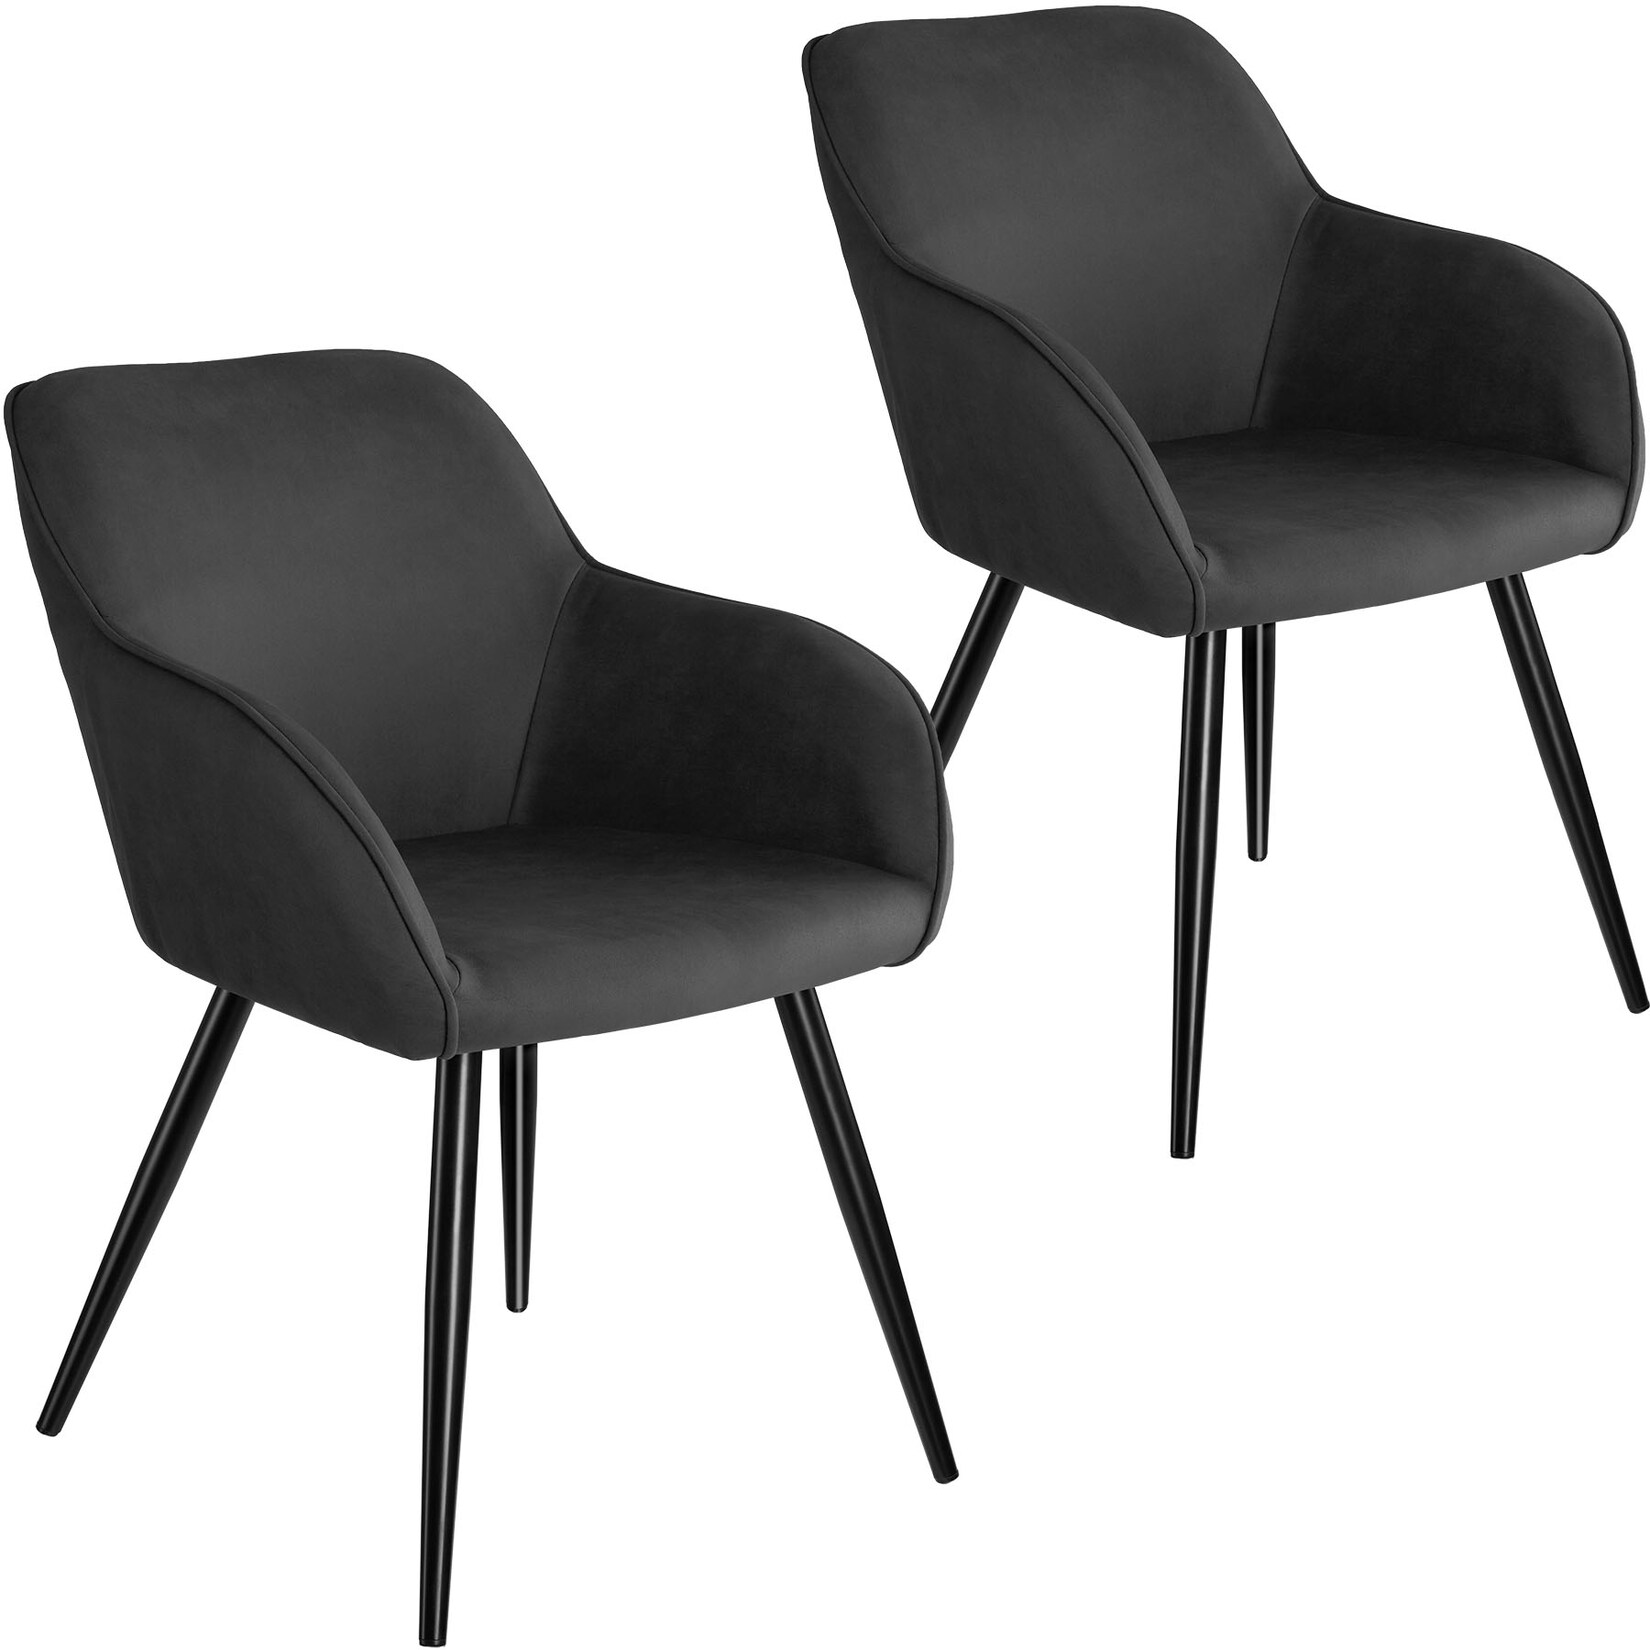 tectake® 2er Set Stuhl, gepolstert mit Stoffbezug, schwarze Stahlbeine, 58 x 62 x 82 cm